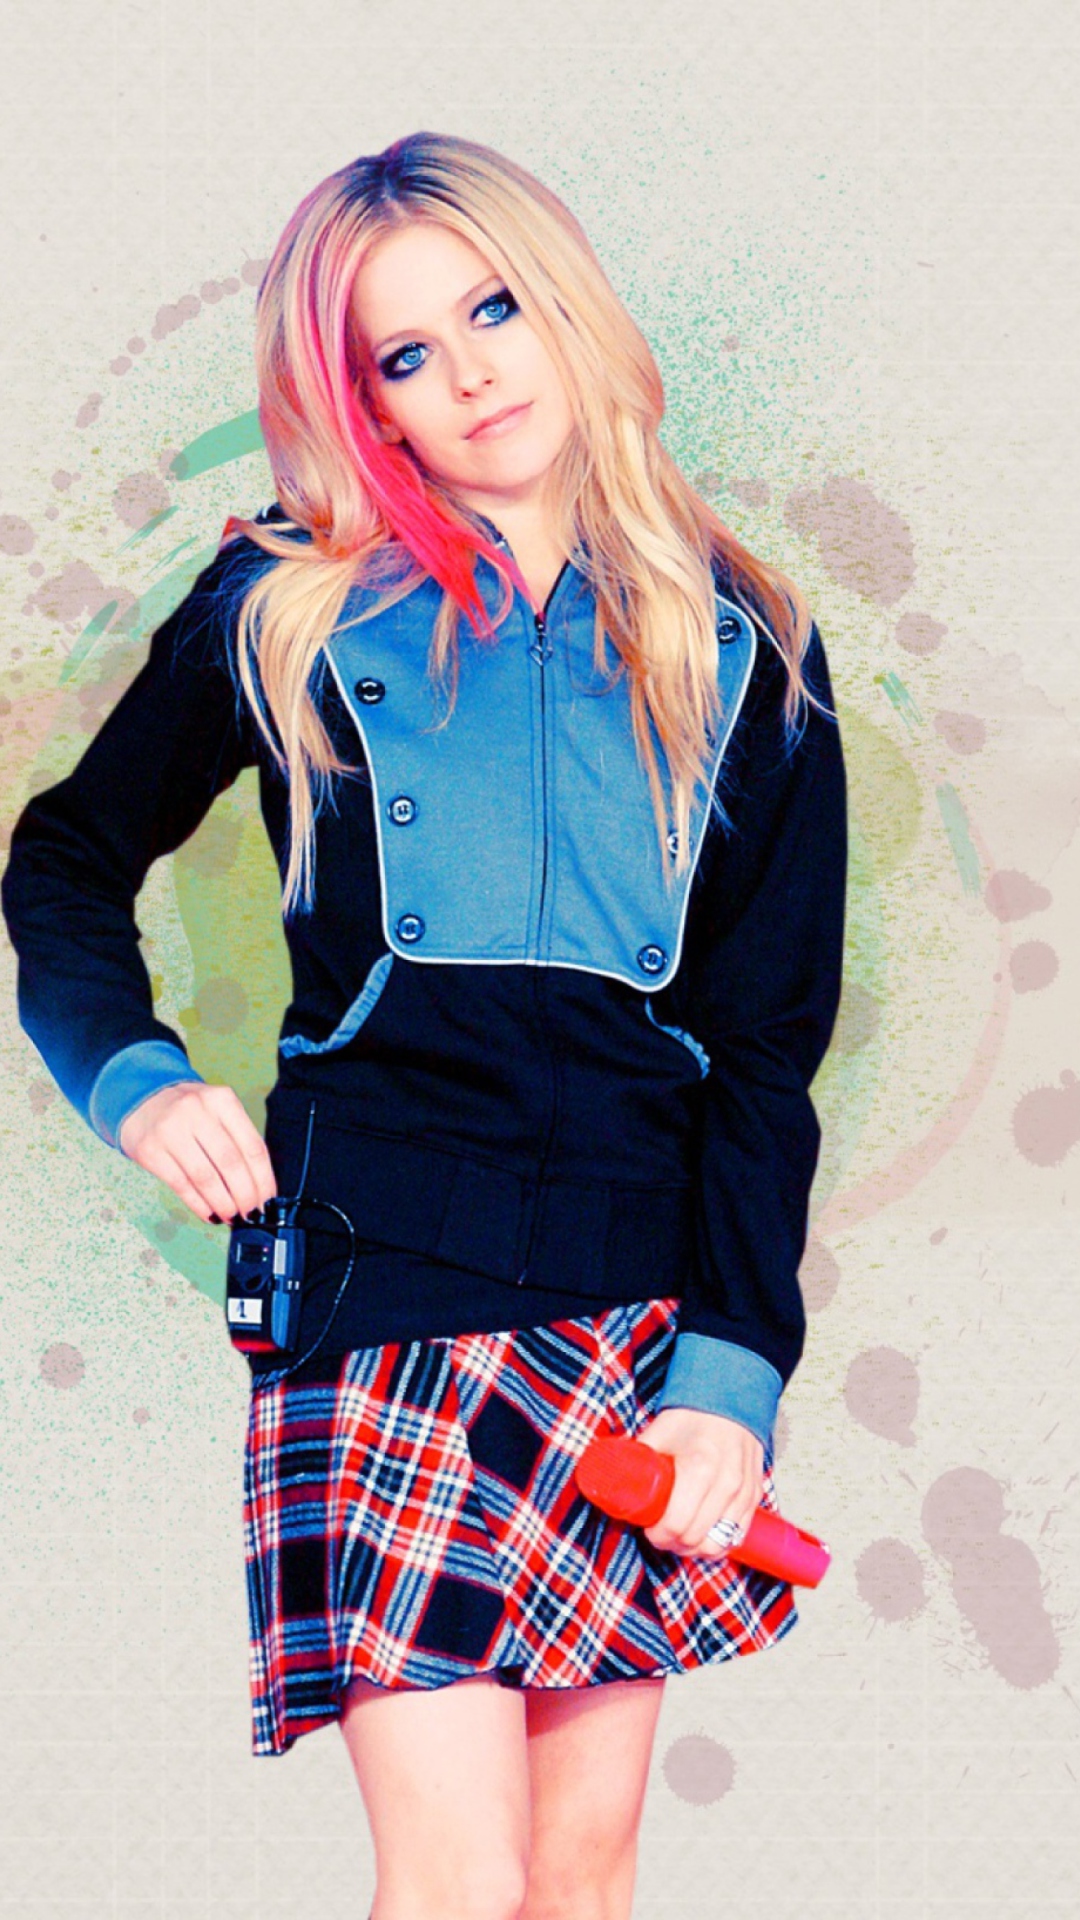 Fondo de pantalla Avril Lavigne 1080x1920